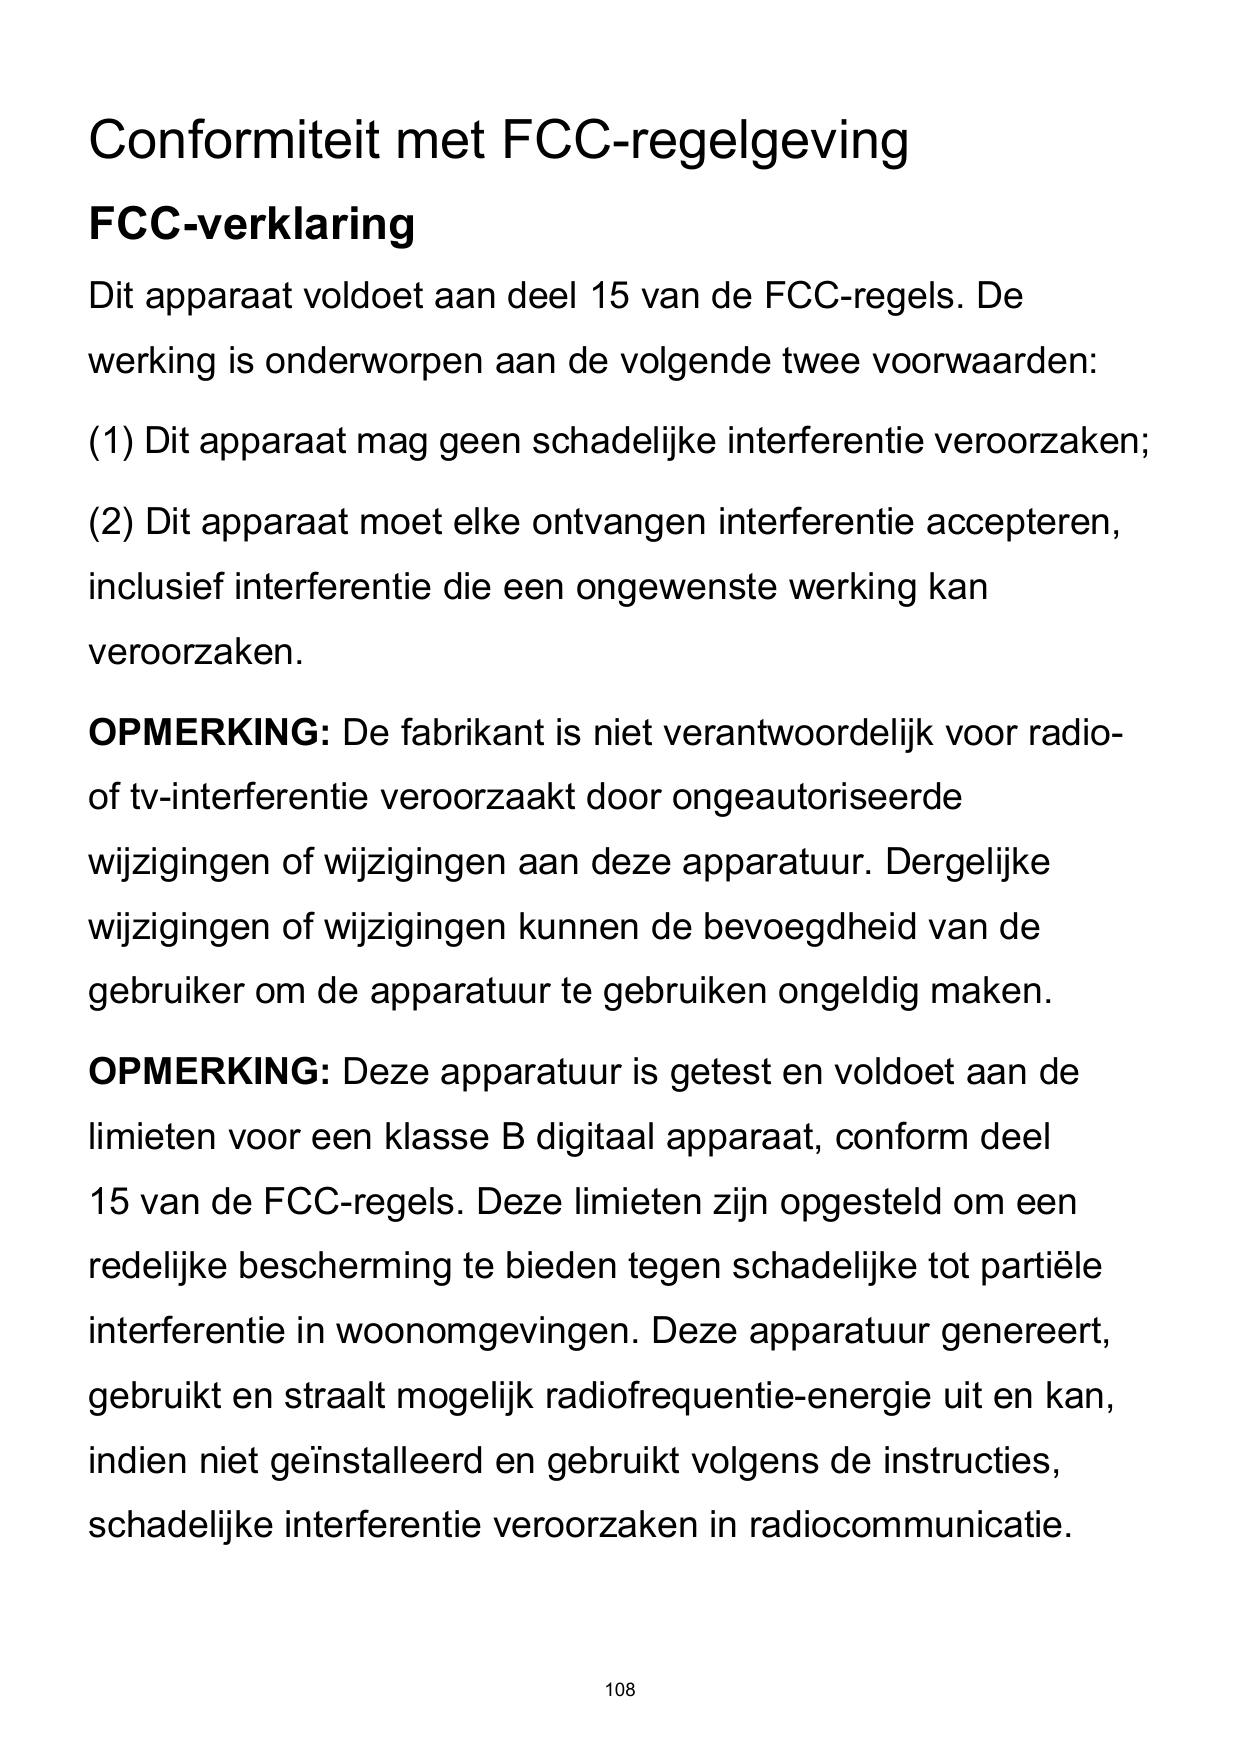 Conformiteit met FCC-regelgevingFCC-verklaringDit apparaat voldoet aan deel 15 van de FCC-regels. Dewerking is onderworpen aan d